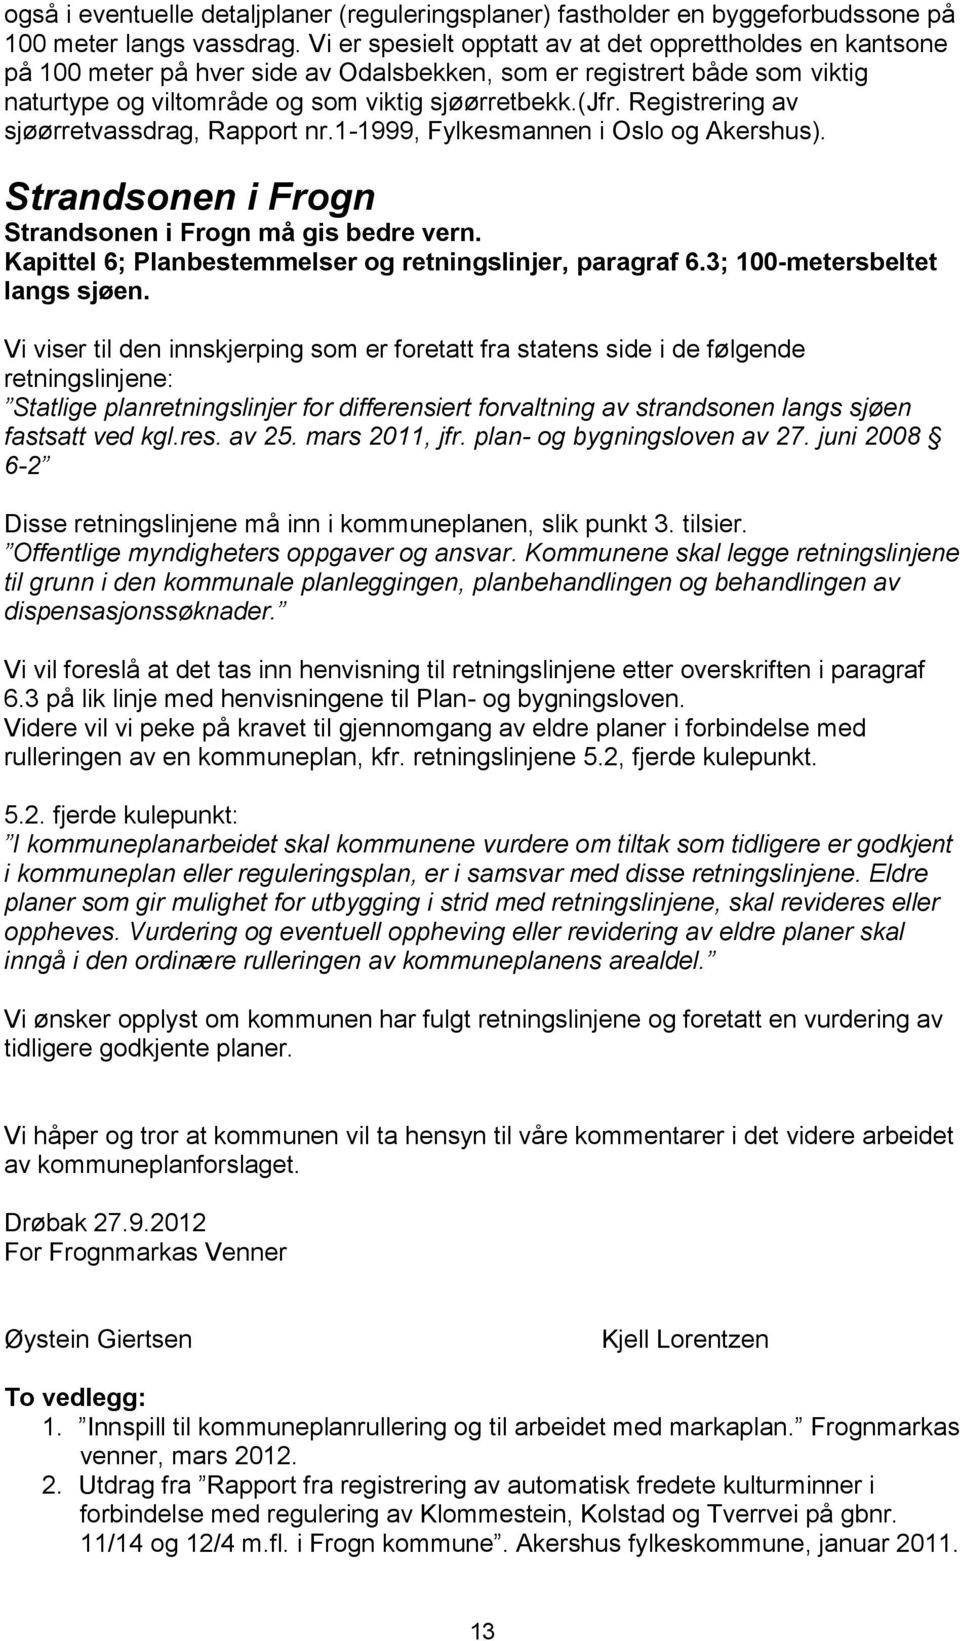 Registrering av sjøørretvassdrag, Rapport nr.1-1999, Fylkesmannen i Oslo og Akershus). Strandsonen i Frogn Strandsonen i Frogn må gis bedre vern.